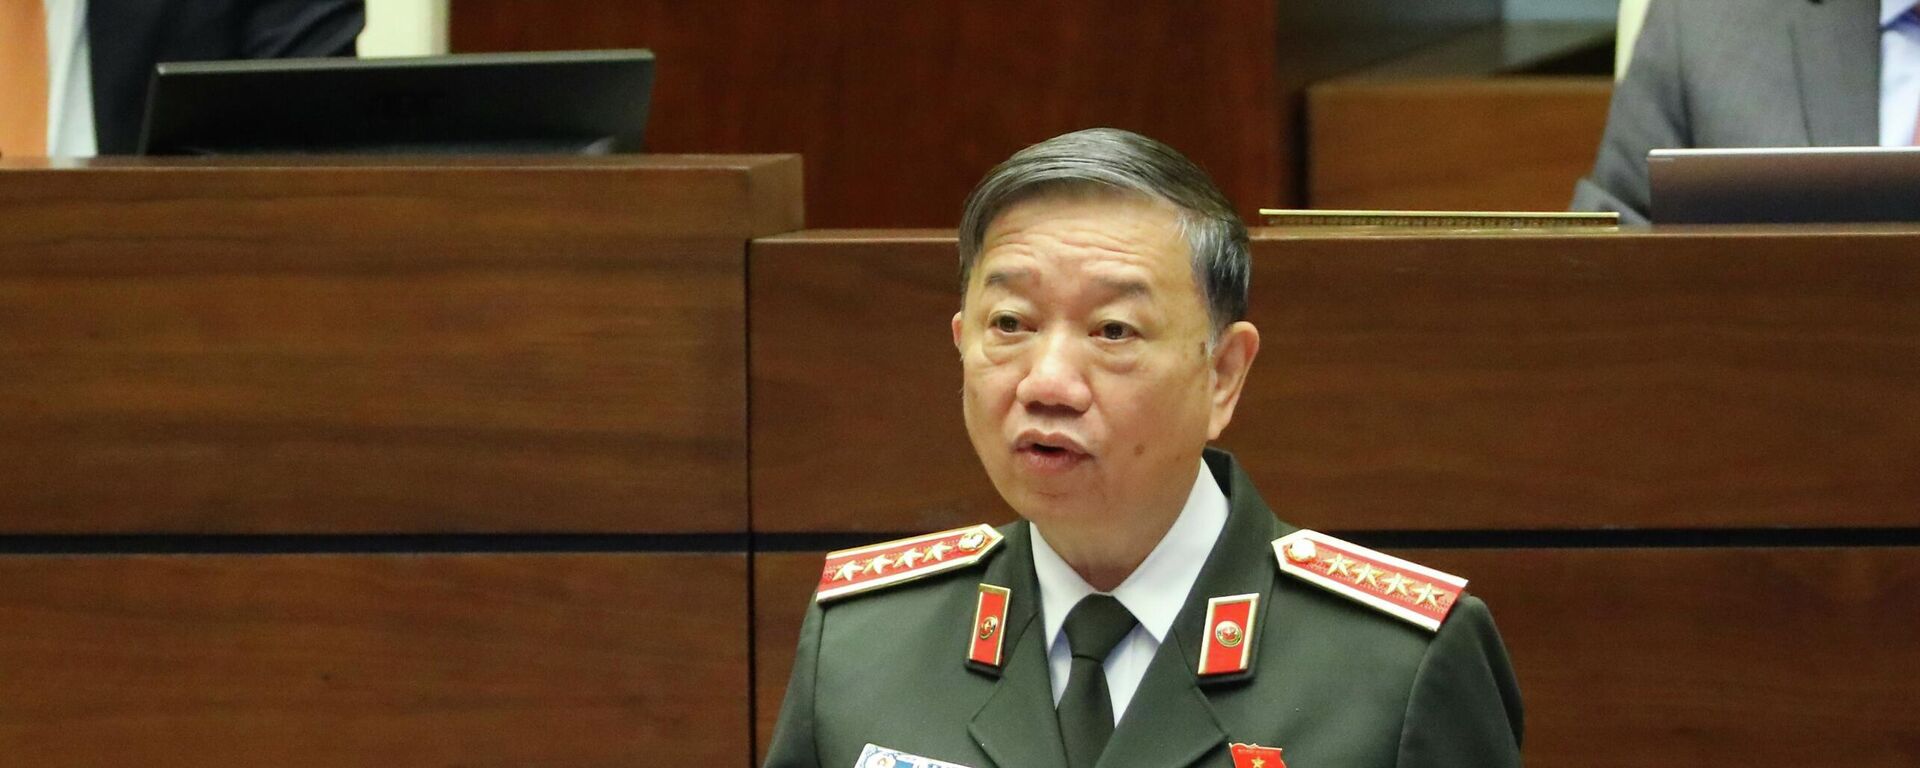 Bộ trưởng Bộ Công an Tô Lâm phát biểu giải trình, làm rõ một số vấn đề đại biểu Quốc hội nêu - Sputnik Việt Nam, 1920, 01.12.2021